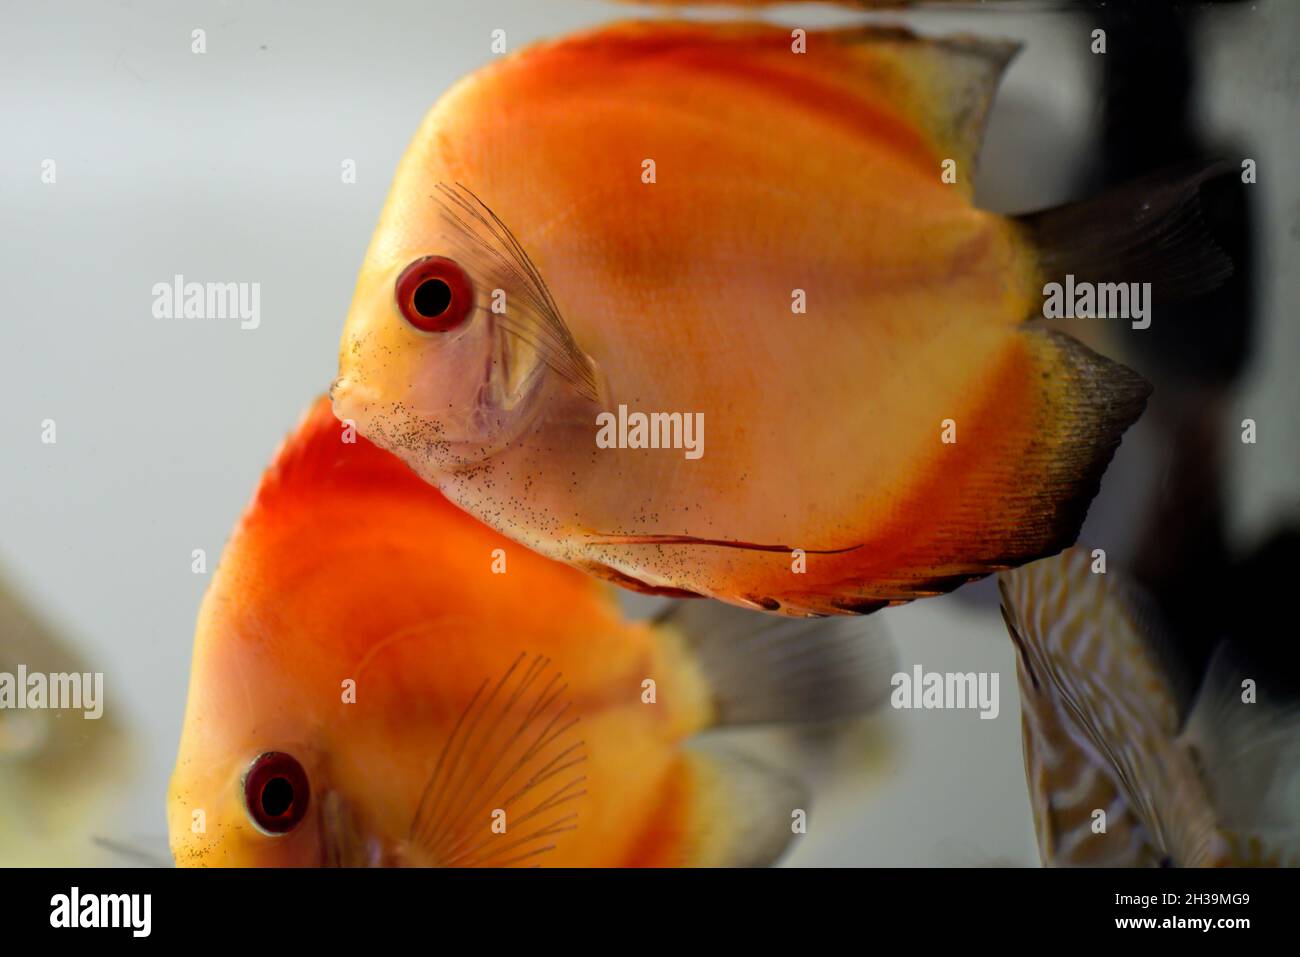 Close-up of melon Discus Fish is swimming in aquarium Stock Photo